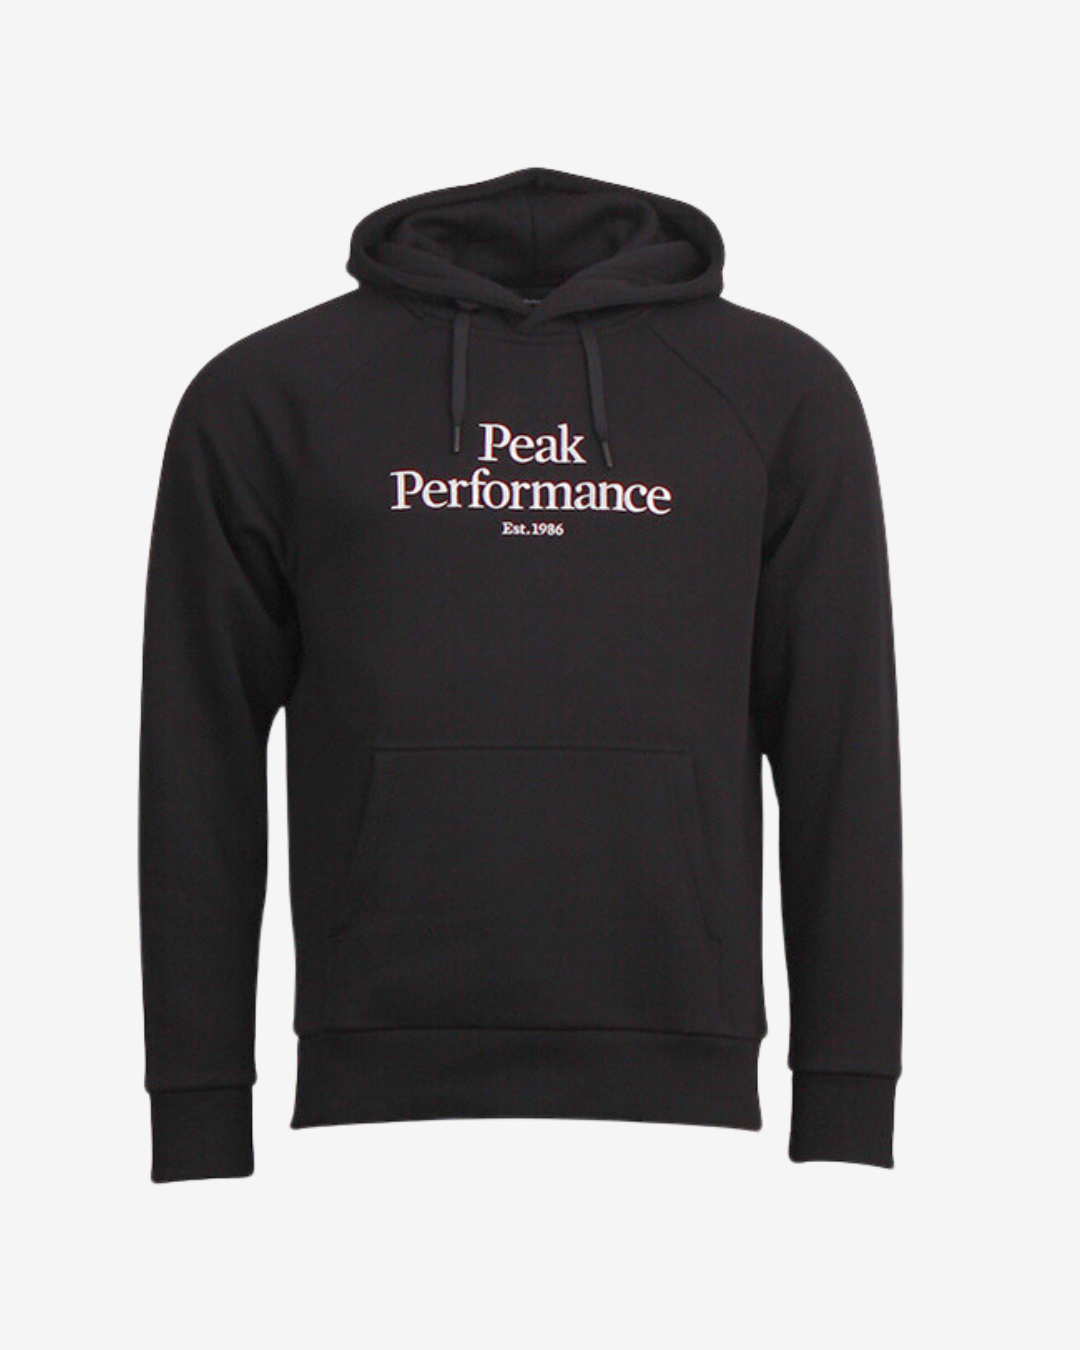 Billede af Peak Performance Original logo hættetrøje - Sort - Str. S - Modish.dk